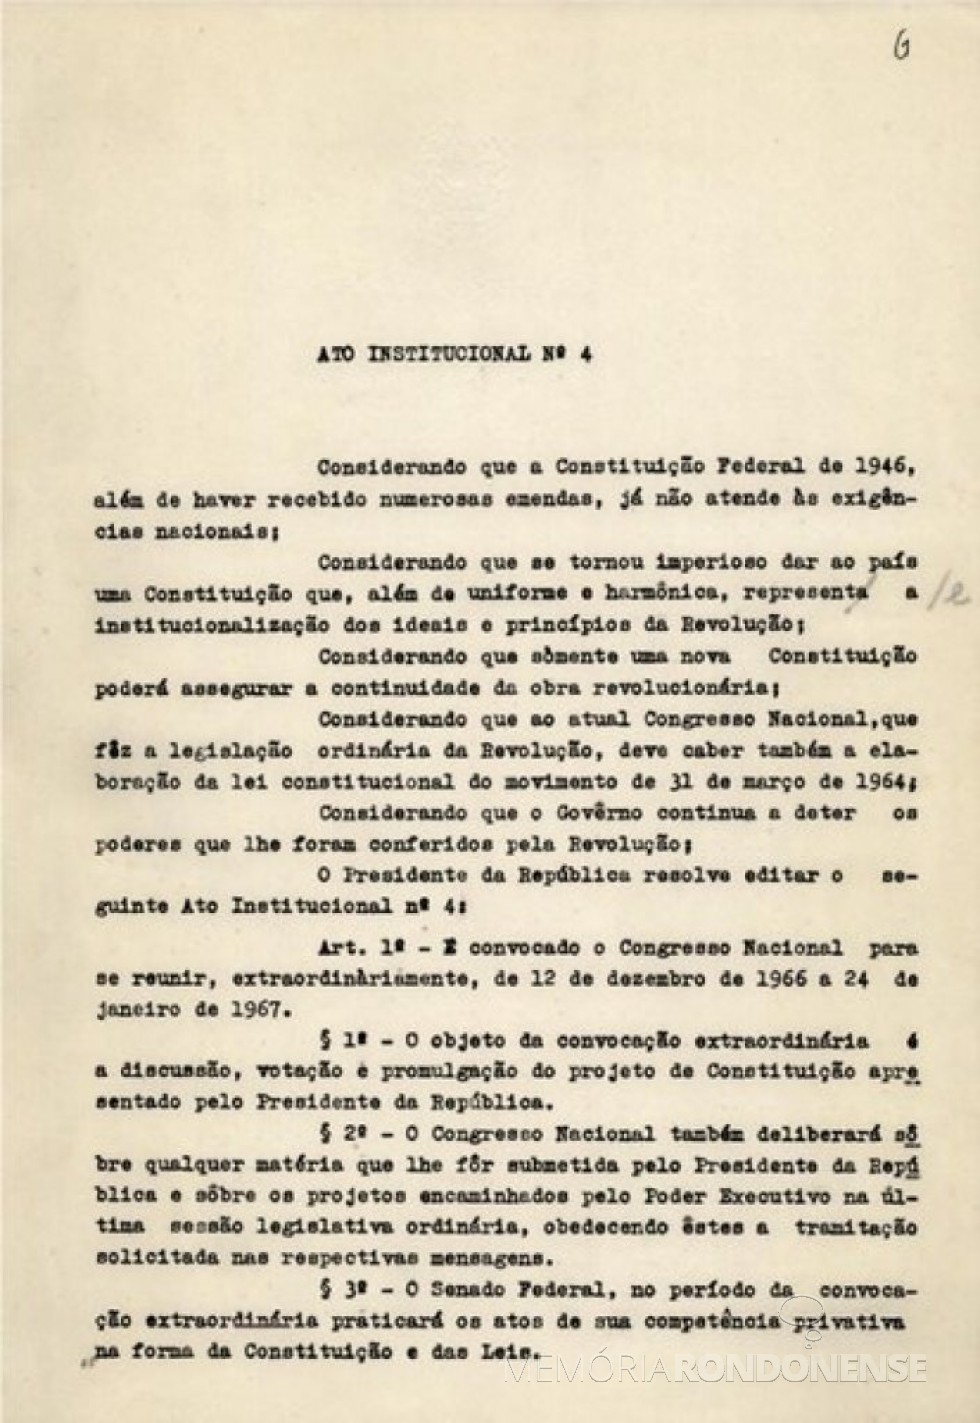 || Página inicial do Ato Institucional nº 4 (AI 4)  enviado ao Congresso Nacional em 07 de dezembro de 1967, para aprovação.
Imagem: Acervo Wikipedia - FOTO 2 - 